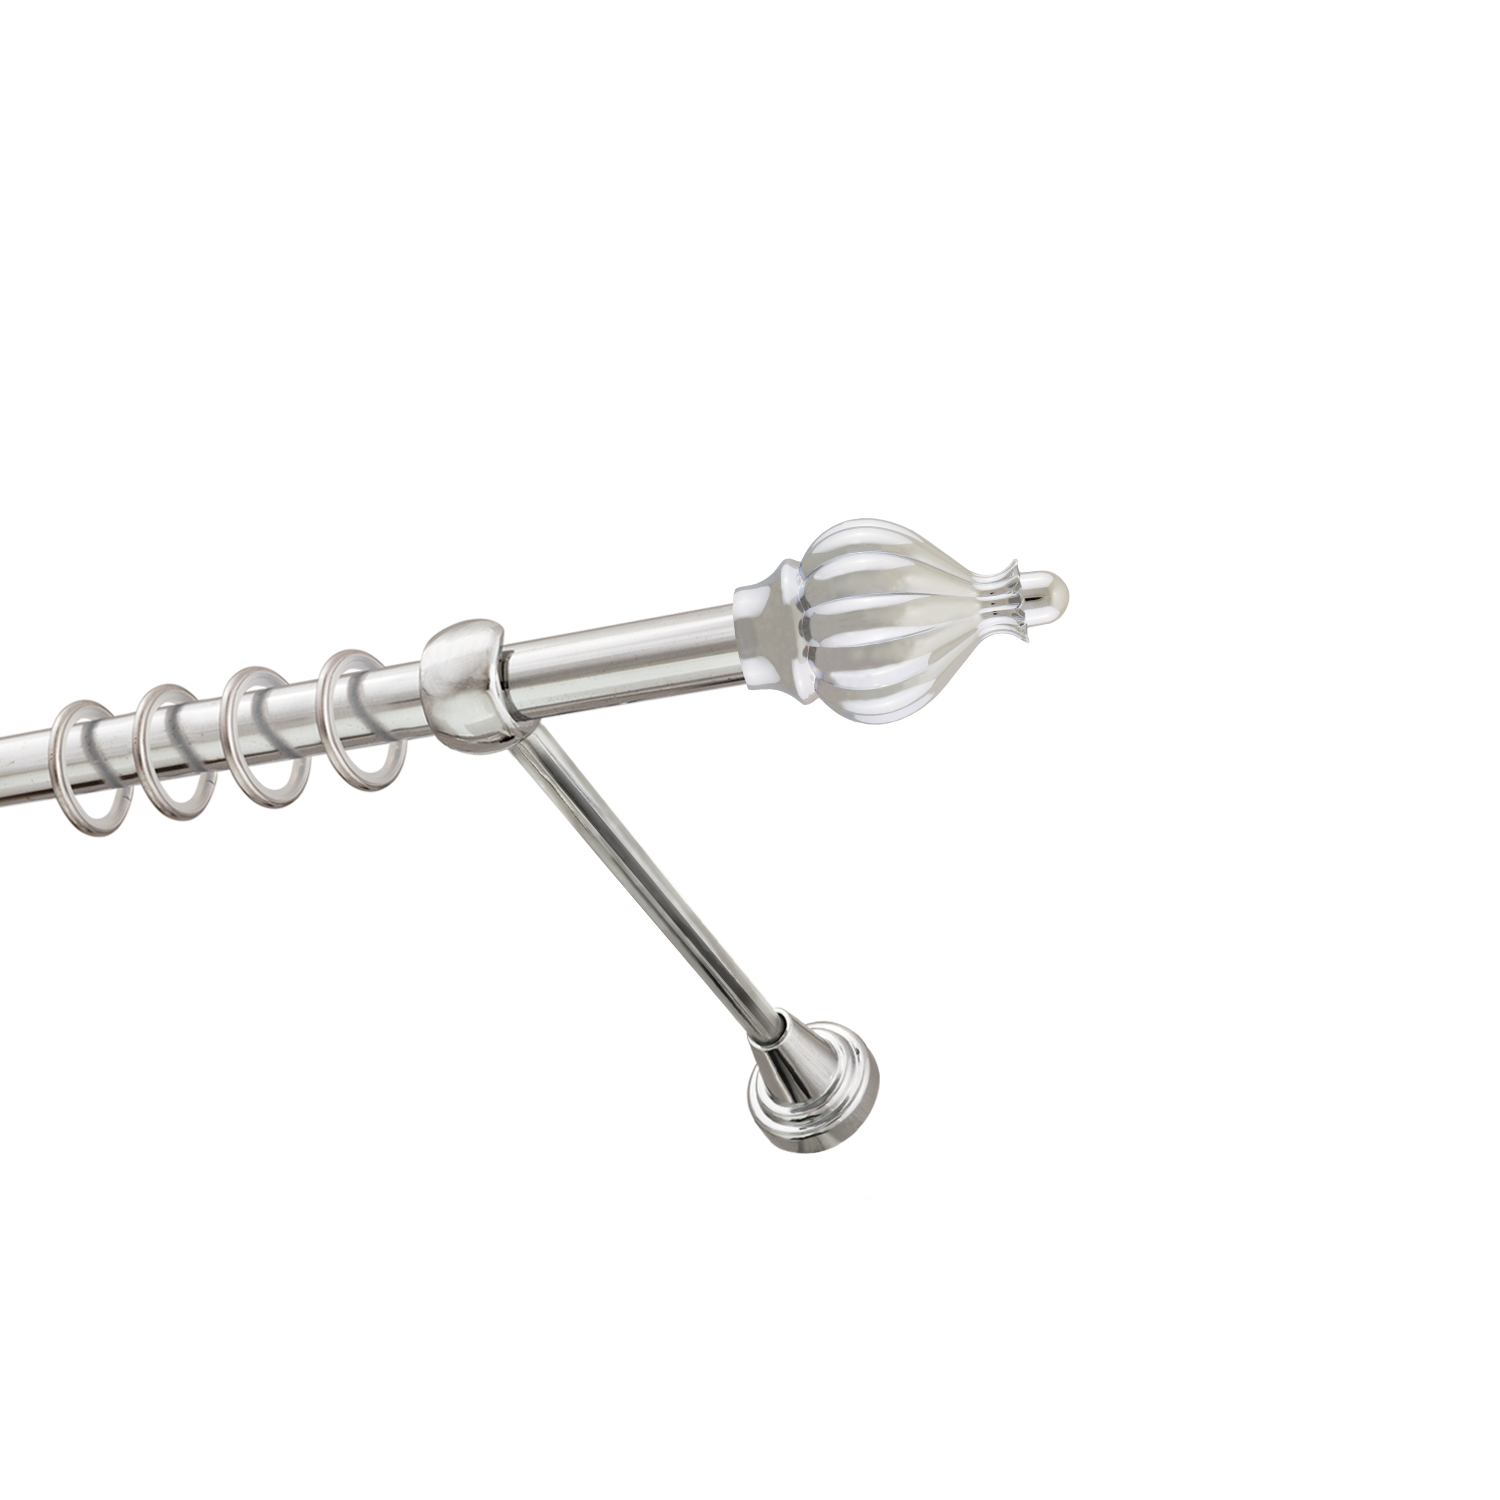 Металлический карниз для штор Афродита, однорядный 16 мм, серебро, гладкая штанга, длина 160 см - фото Wikidecor.ru